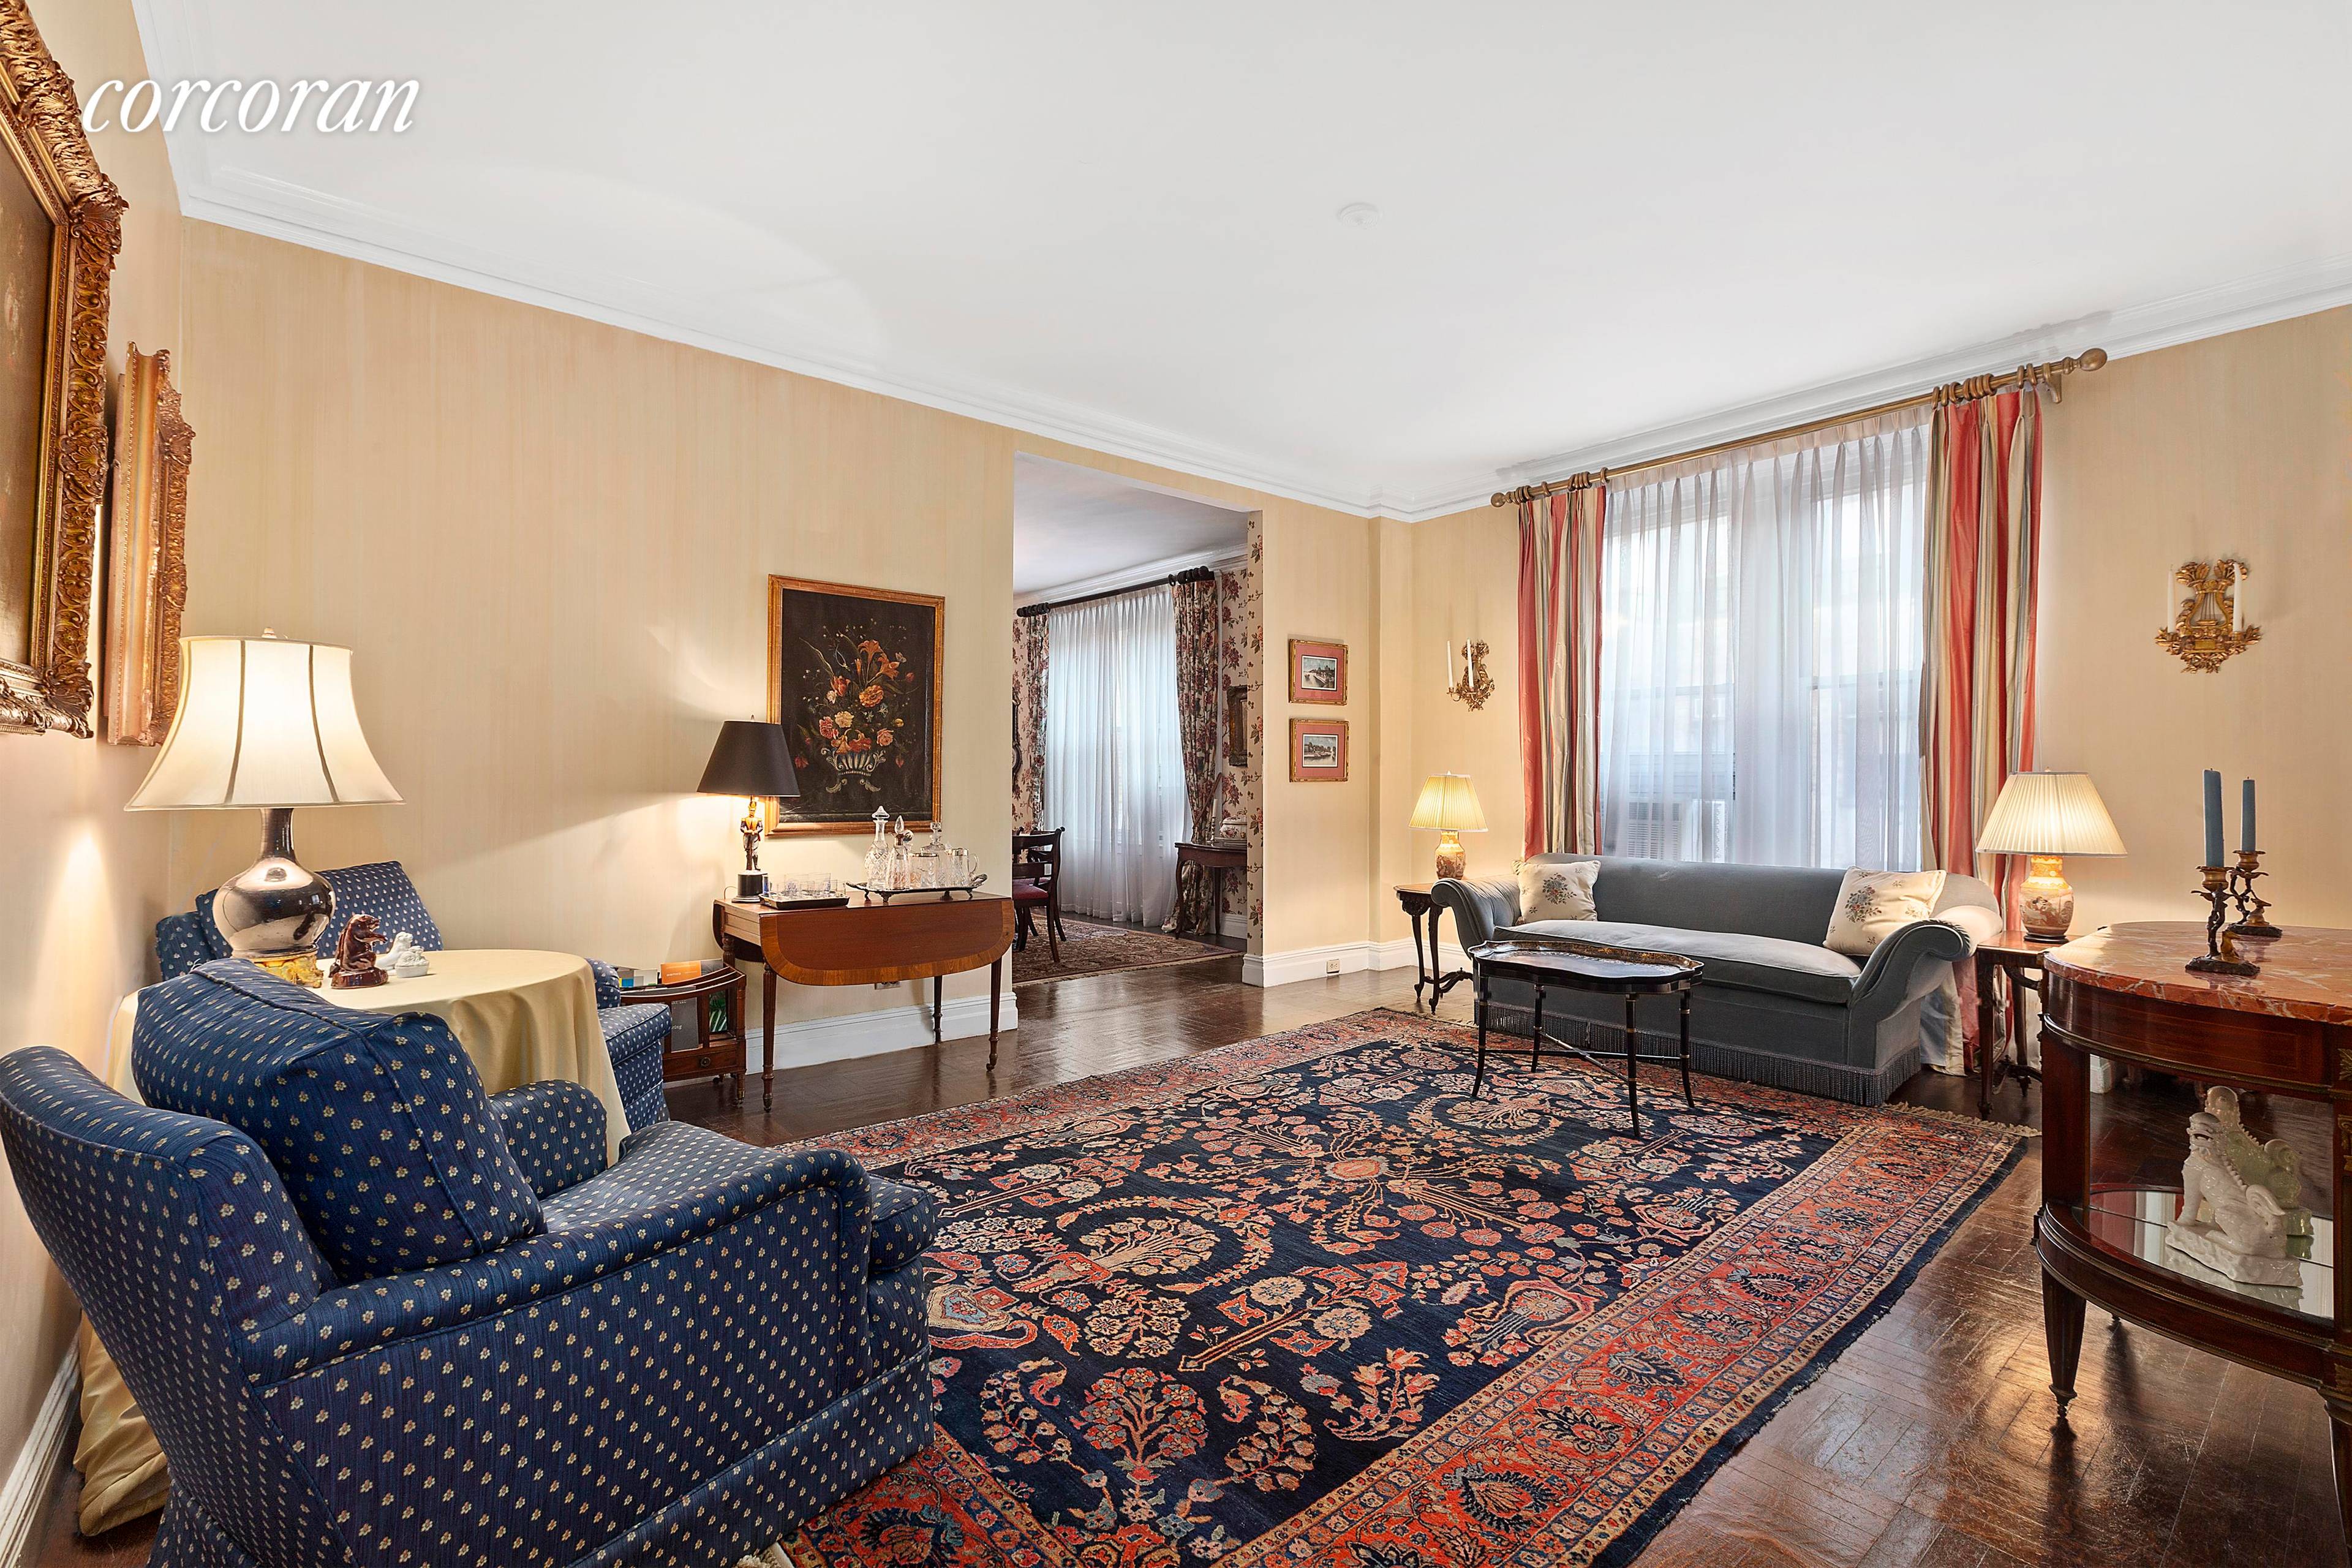 Grand and elegant 7 room apartment in beautiful Park Avenue Coop.